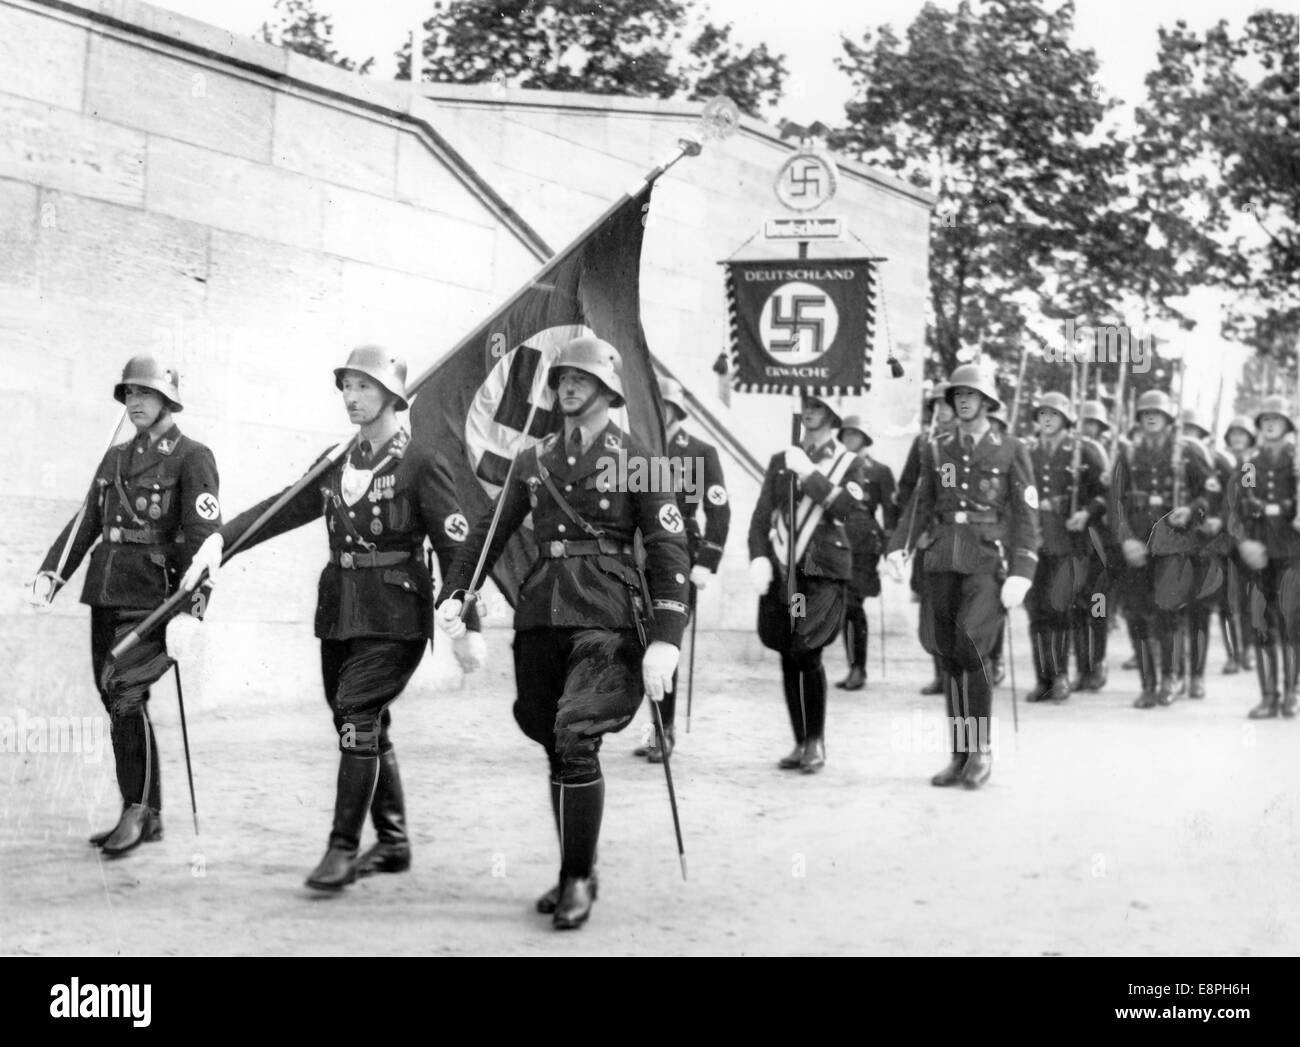 Nürnberg-Rallye-1937 in Nürnberg - Weihe der neuen Normen mit "Blut Flagge" von Adolf Hitler (nicht abgebildet) während der Appell der Sturmabteilung (SA), Schutzstaffel (SS), nationale sozialistische Motor-Korps (NSKK) und nationalen sozialistischen Flyer Corps (NSFK) am Puitpoldarena auf dem Gelände der Nazi-Partei Rallye, hier Eingang von der "Blut-Flagge" getragene "Träger des Blut-Flagge" Jakob Grimminger. Neue Maßstäbe der SA und SS wurden durch Berühren der Blut-Flagge, die angeblich in der gescheiterten Bier Hall Putsch durchgeführt wurde "geweiht" (Achtung: Originalkopie gewesen Retouc Stockfoto